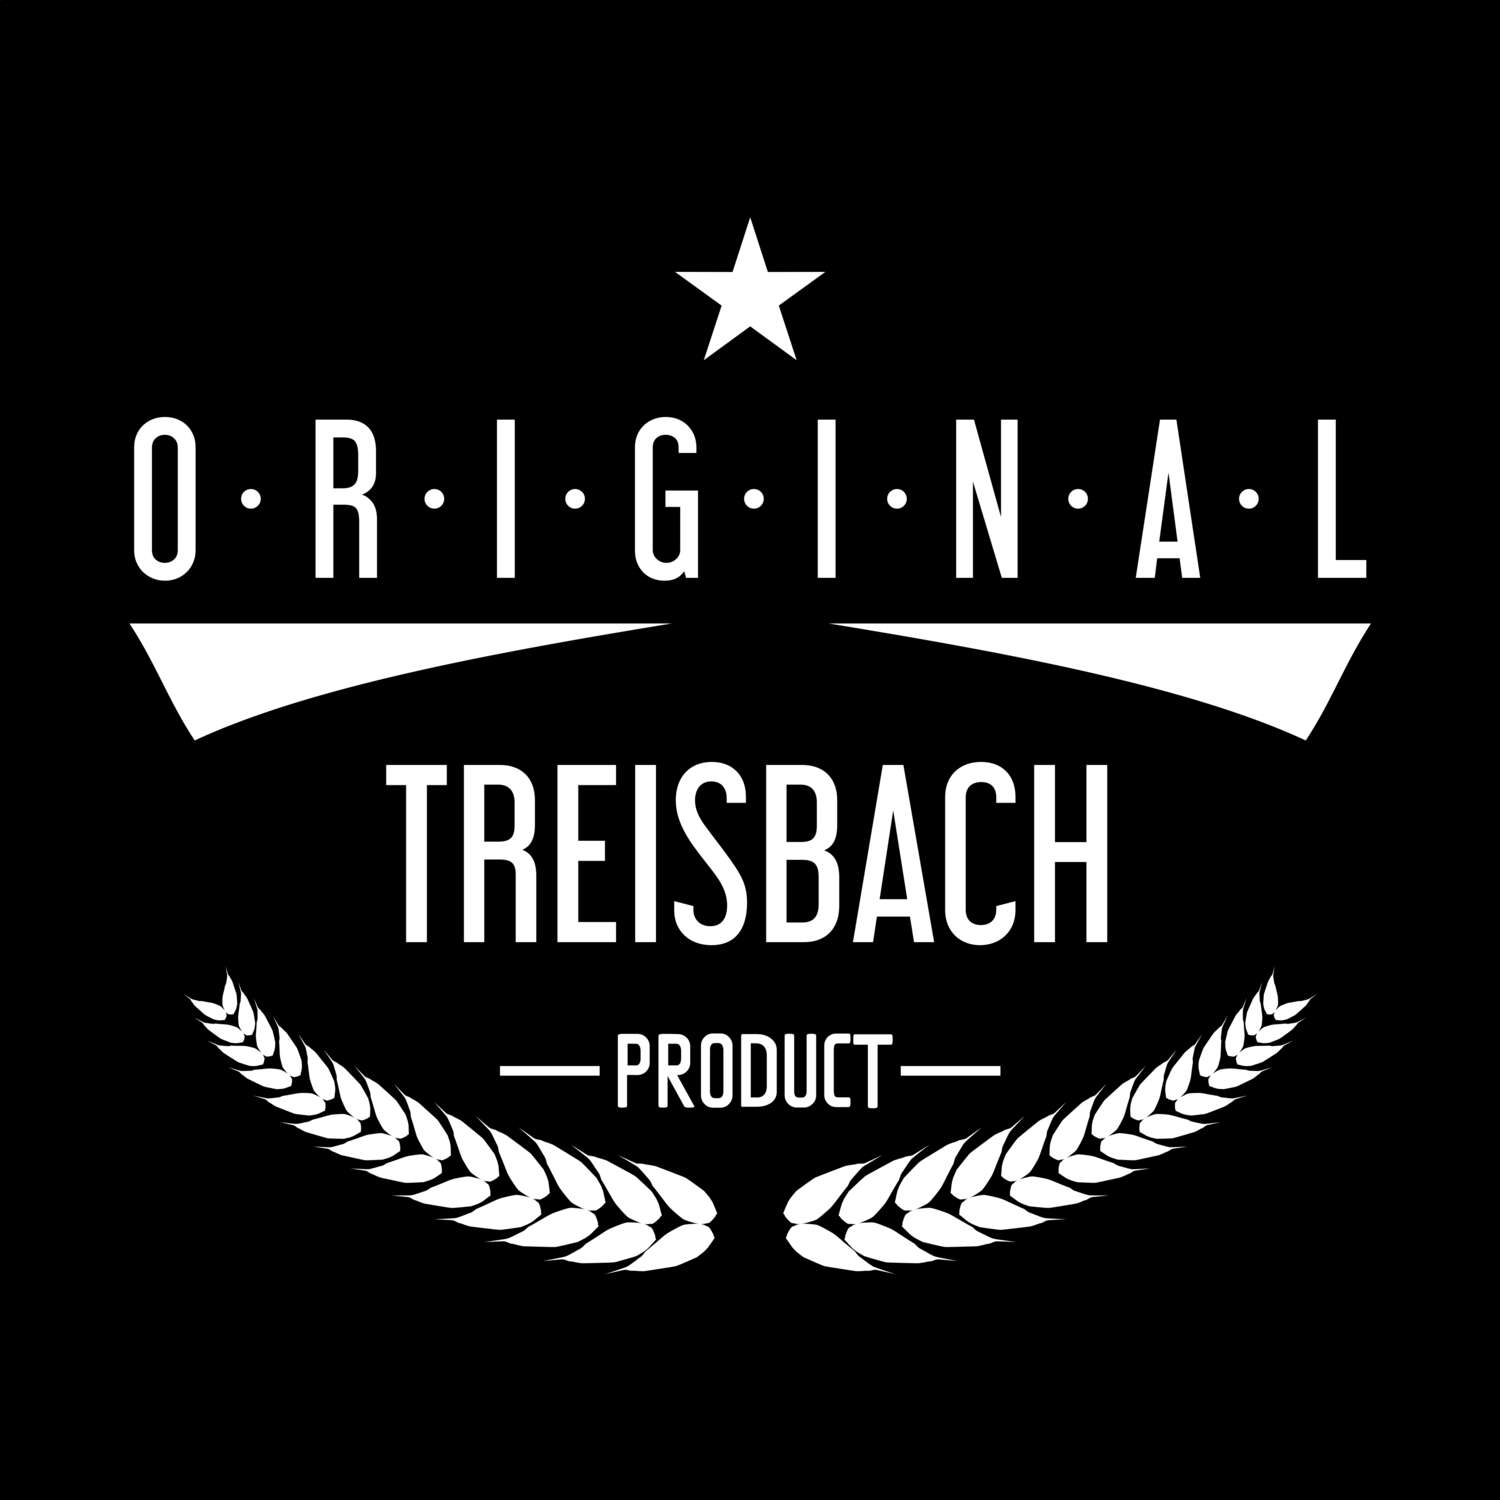 Treisbach T-Shirt »Original Product«